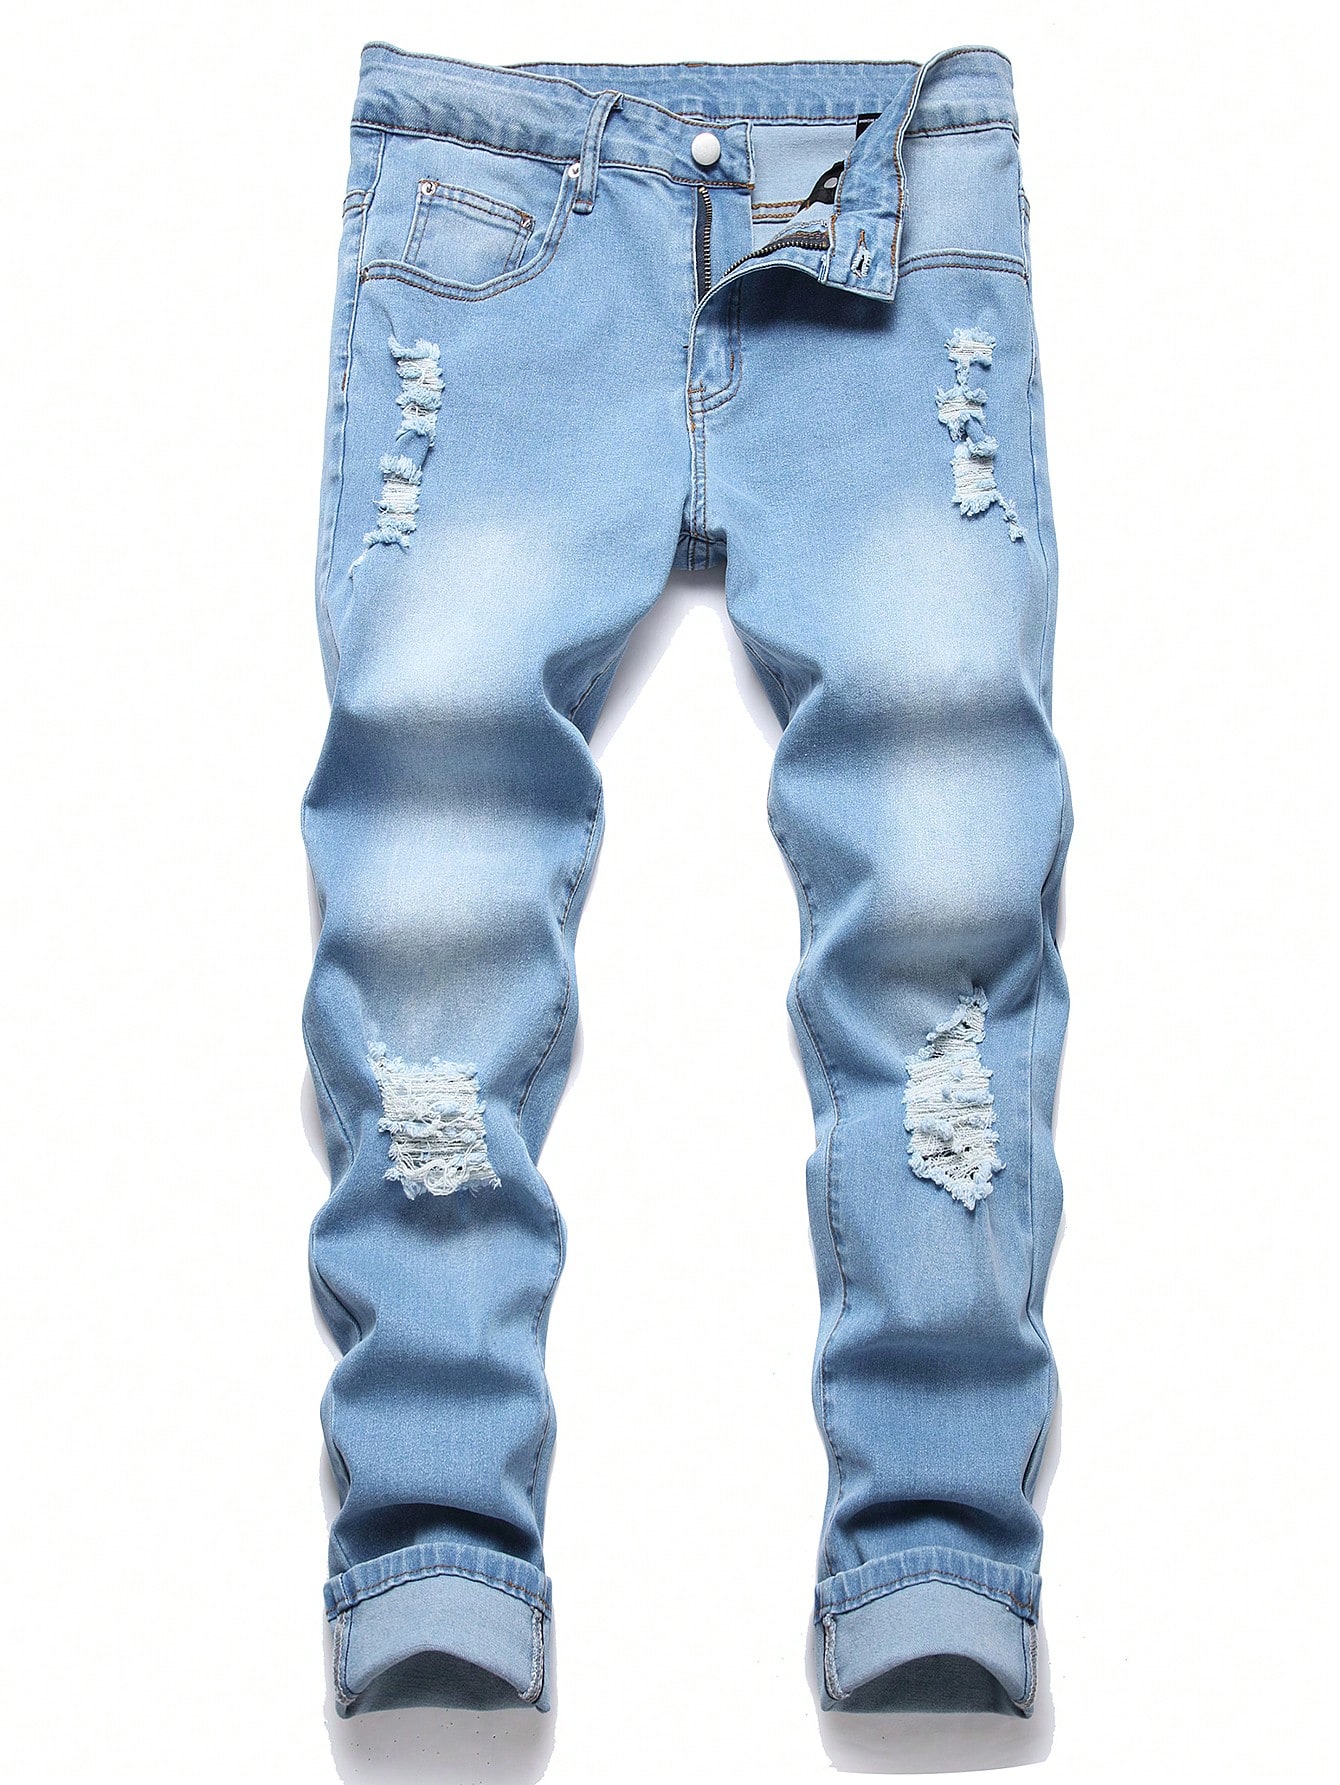 Мужские рваные джинсы скинни Manfinity EMRG, средняя стирка мужские узкие джинсы рваные джинсы стрейчевые джинсы для мужчин облегающие джинсы с дырками мужские джинсы с принтом разные стили разме